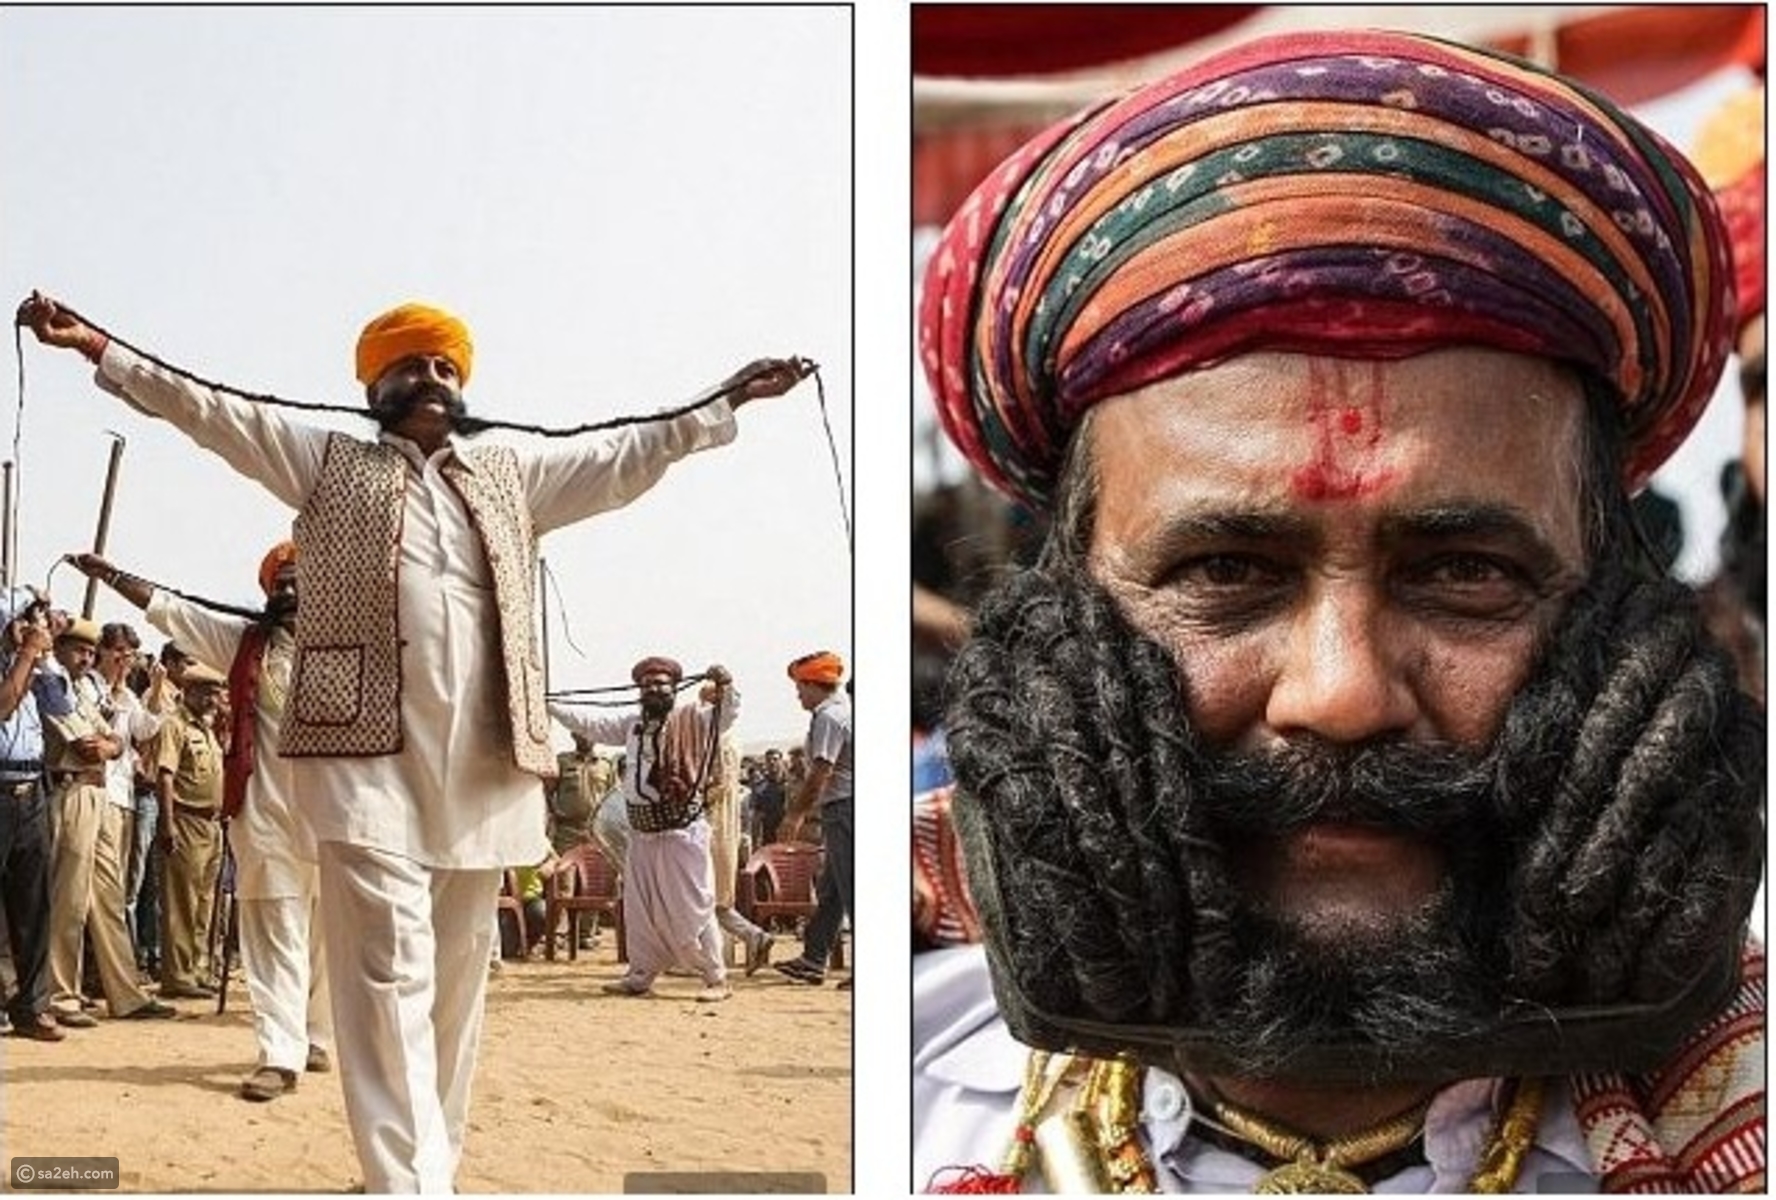 بالصور: مسابقة أطول شارب في الهند